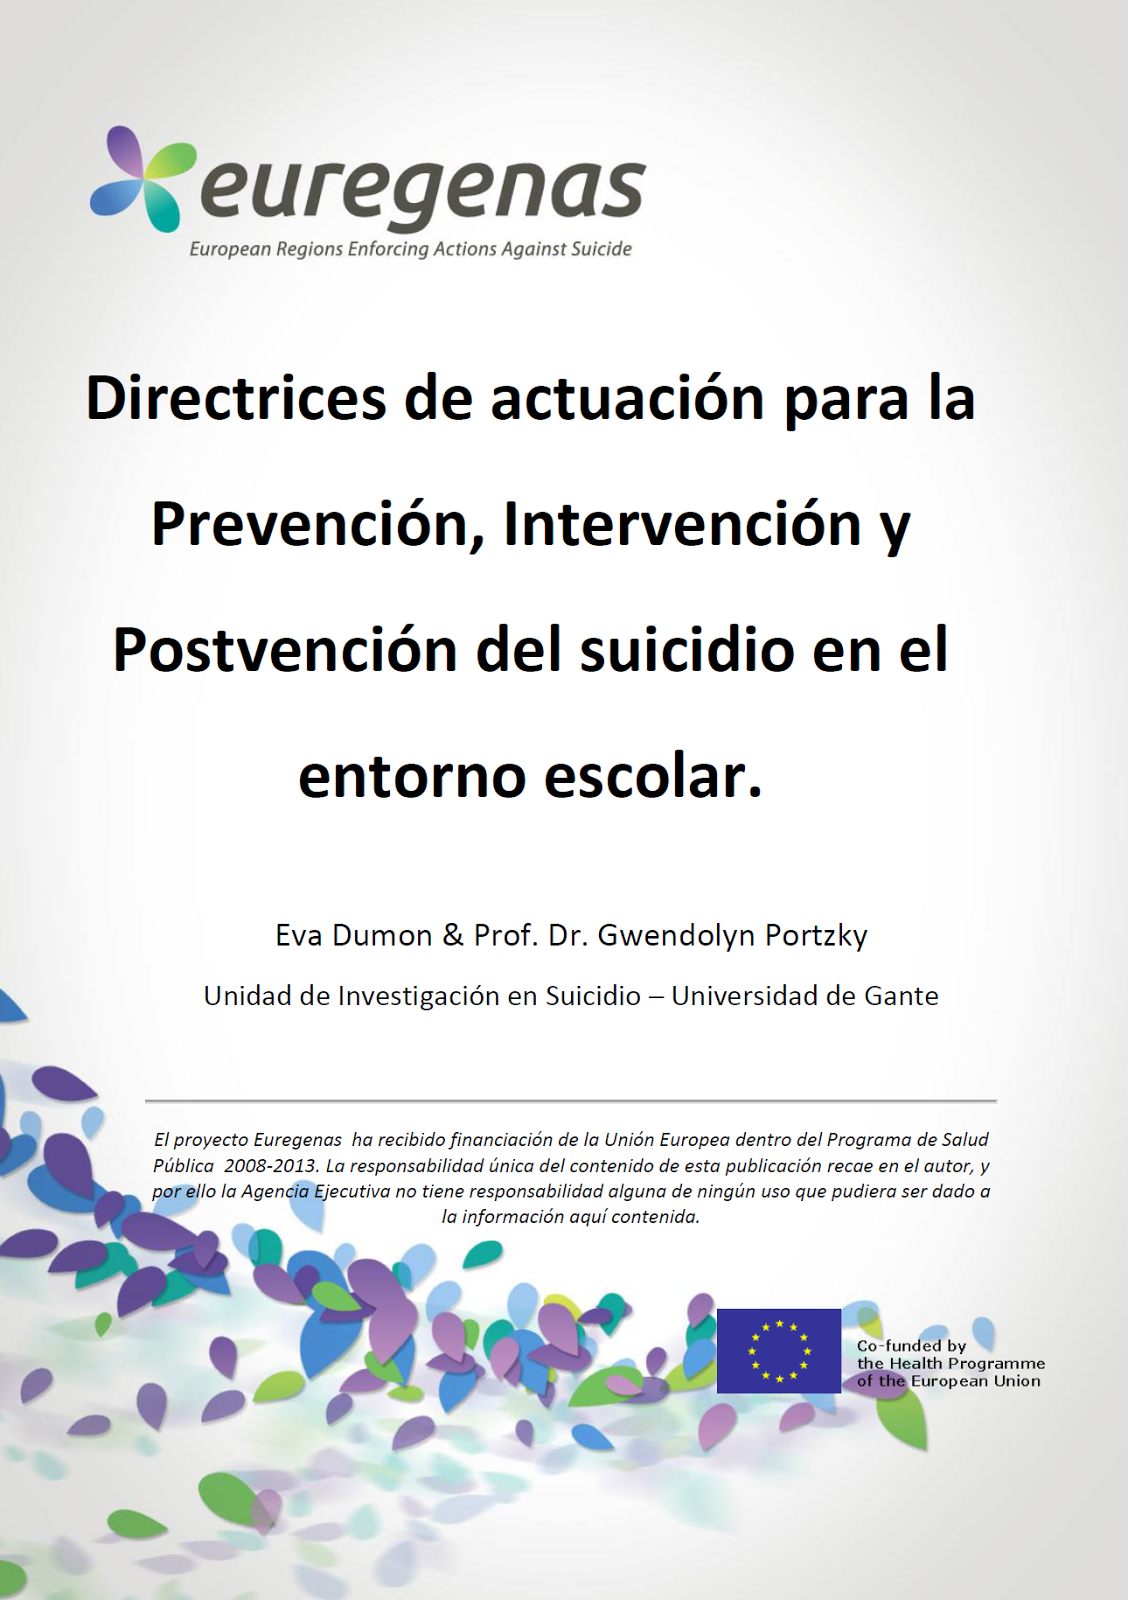 http://www.euregenas.eu/wp-content/uploads/2015/01/Guia-de-recursos-de-intervencion-en-la-prevencion-de-suicidio-en-entornos-escolares.pdf